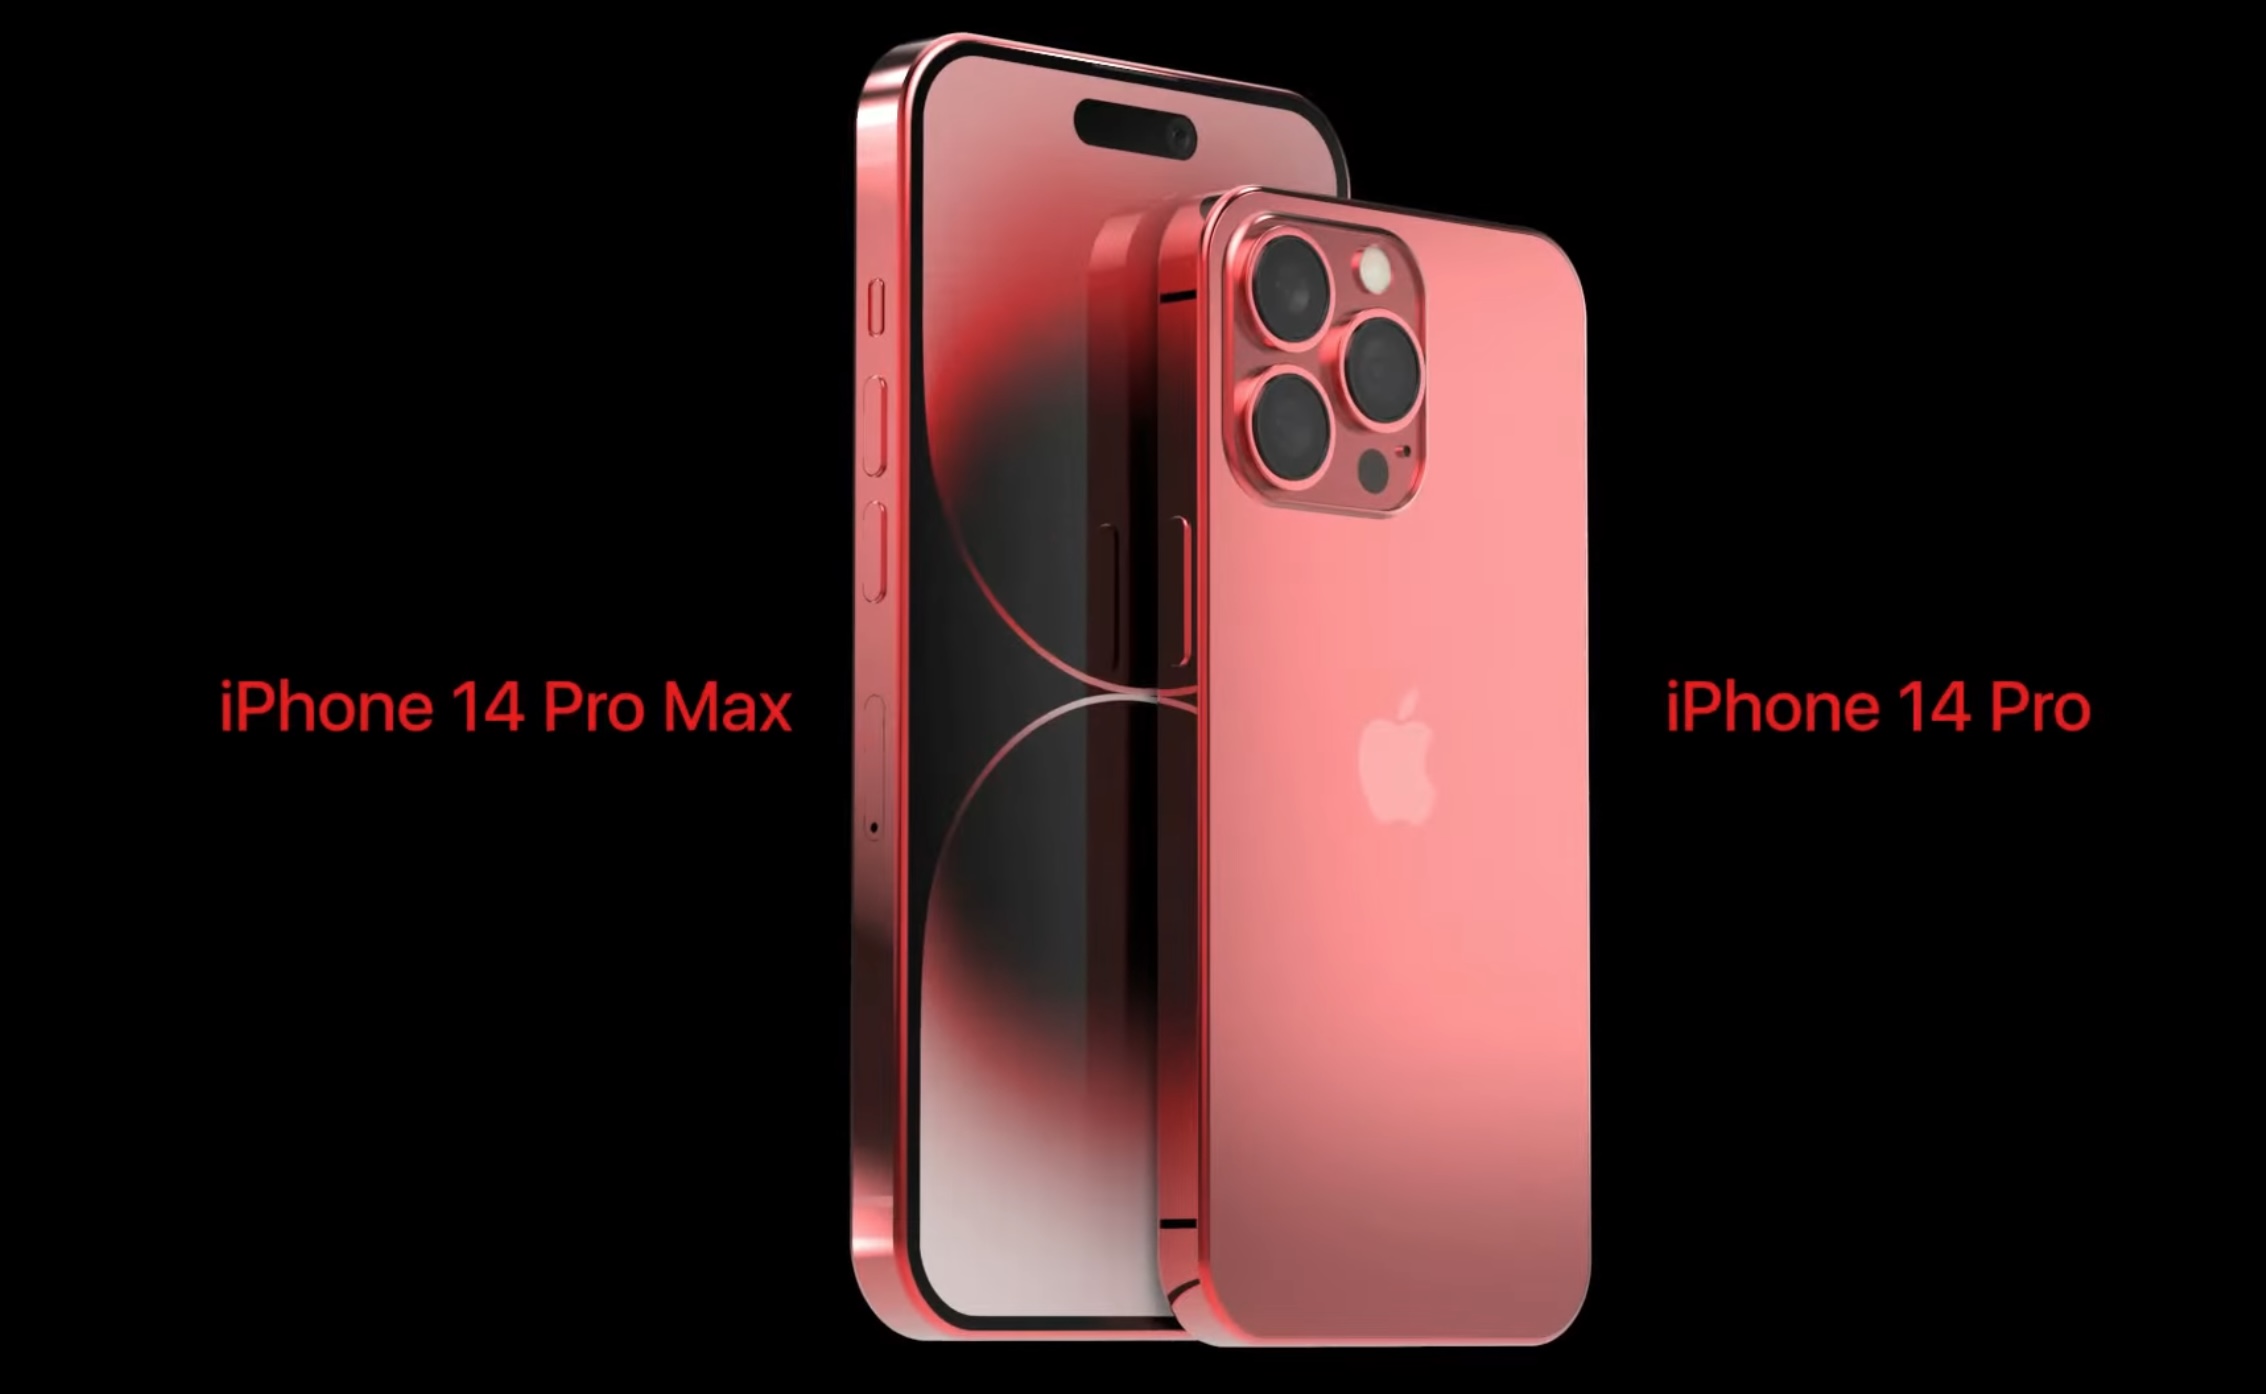 Đắm chìm trong nét đẹp cuốn hút và khả năng mạnh mẽ của iPhone 14 Pro Max màu đỏ. Không chỉ sở hữu ngoại hình đầy cuốn hút, điện thoại này còn có khả năng xử lý nhanh chóng các tác vụ khó khăn nhất. Màn hình lớn, bộ ba camera chất lượng, và thiết kế trong sang sẽ làm cho chiếc điện thoại của bạn trở nên đáng để sở hữu.